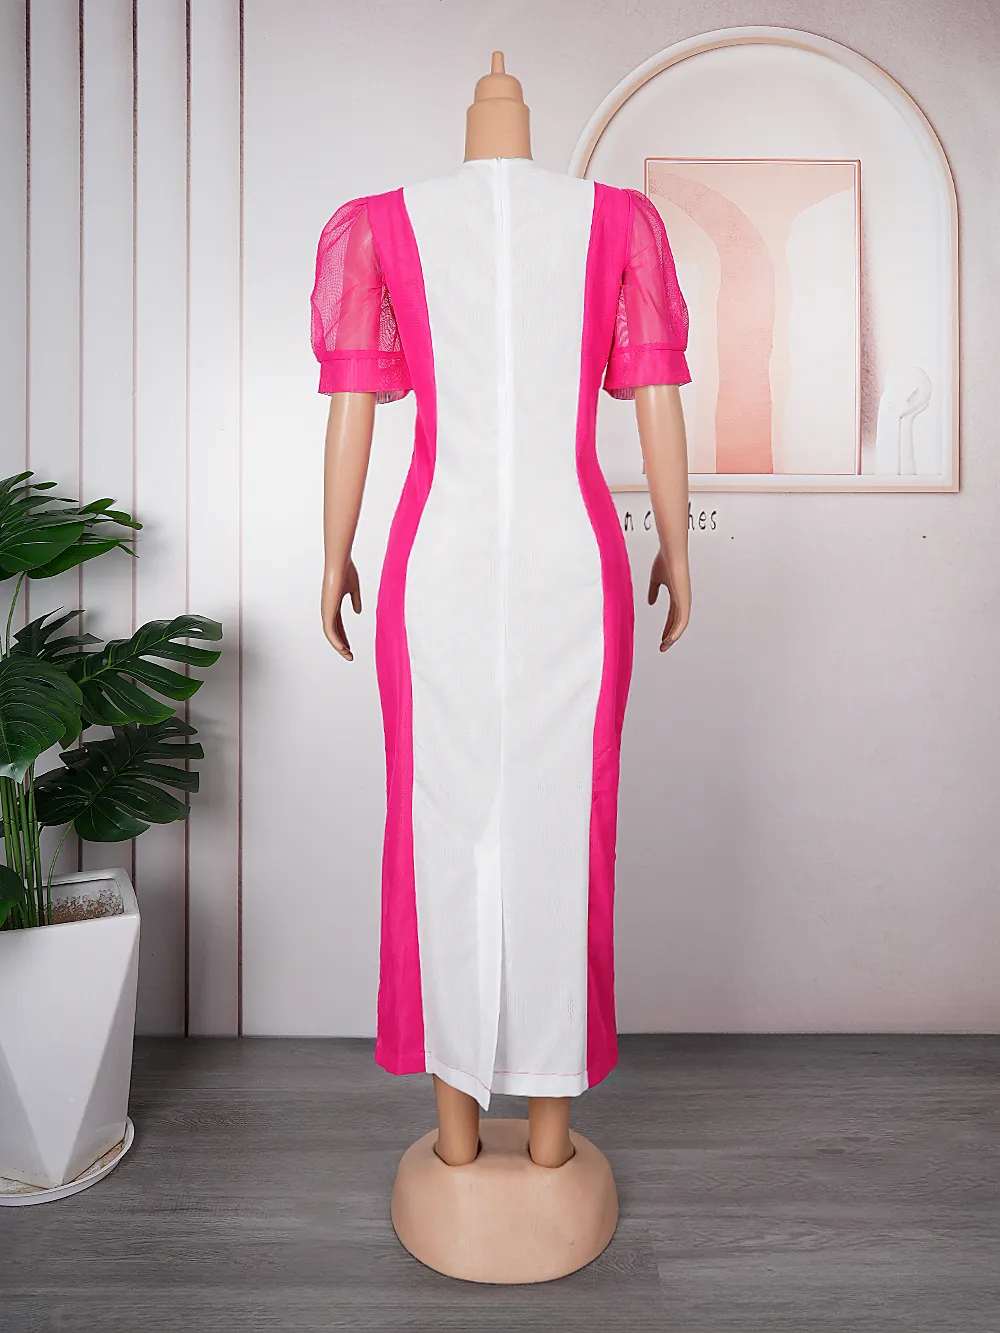 H & D Fashion Afrikanische Kleider für Frauen Plus Size Maxi kleid Elegante Party Outfits